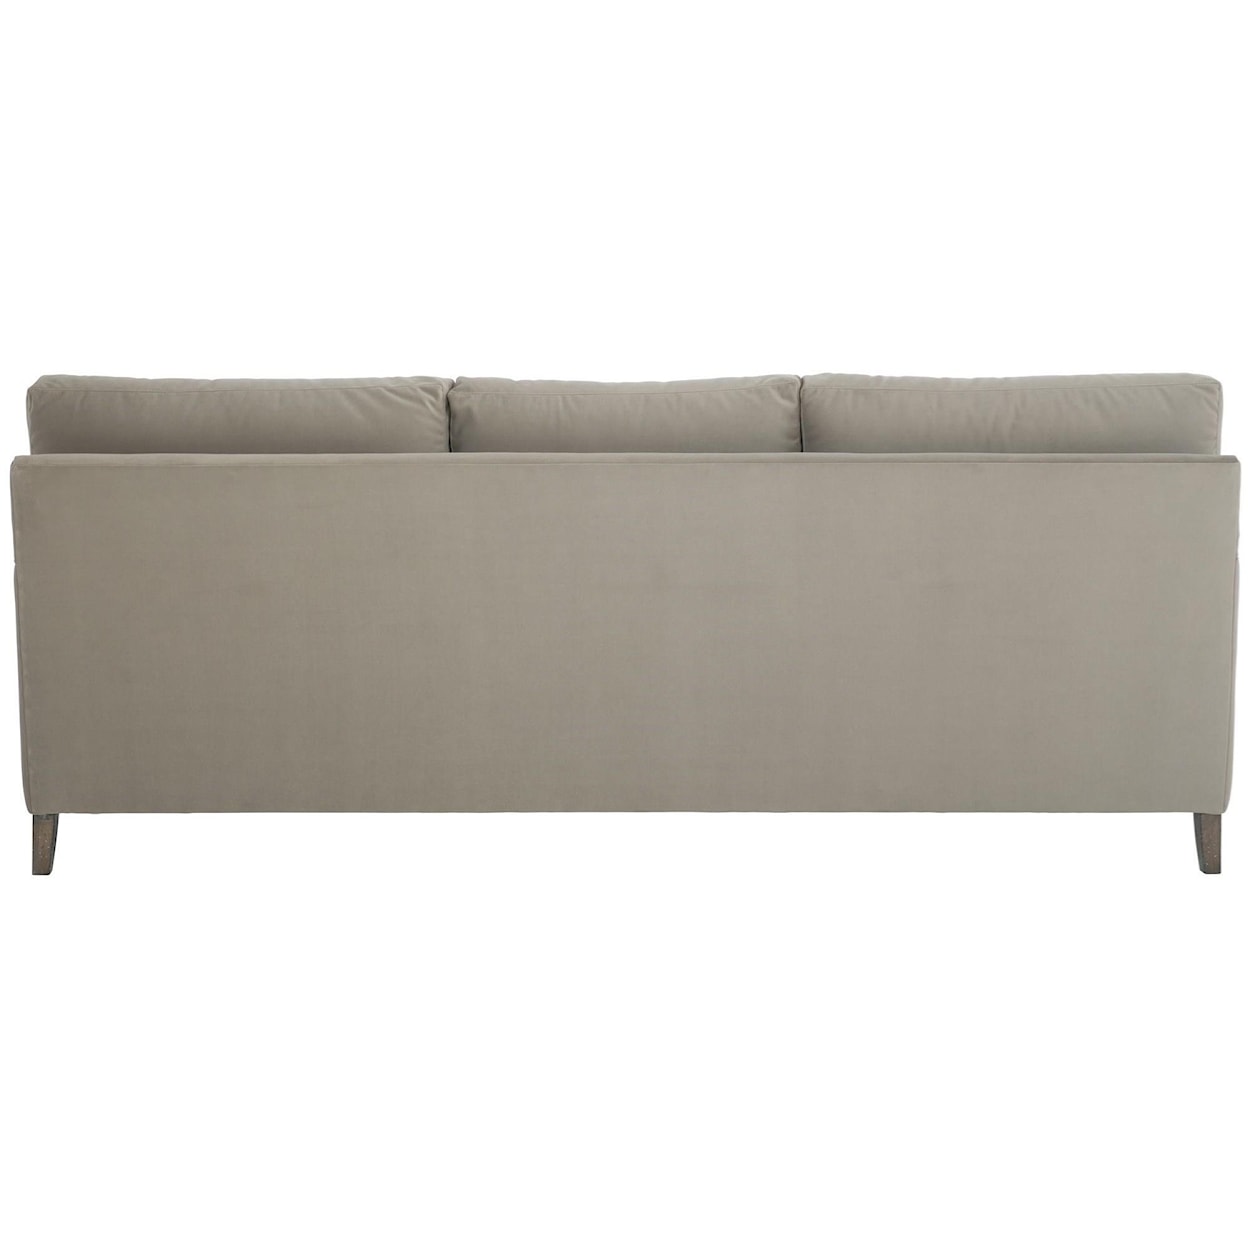 Bernhardt Mila Mila Fabric Sofa Without Throw Pillows